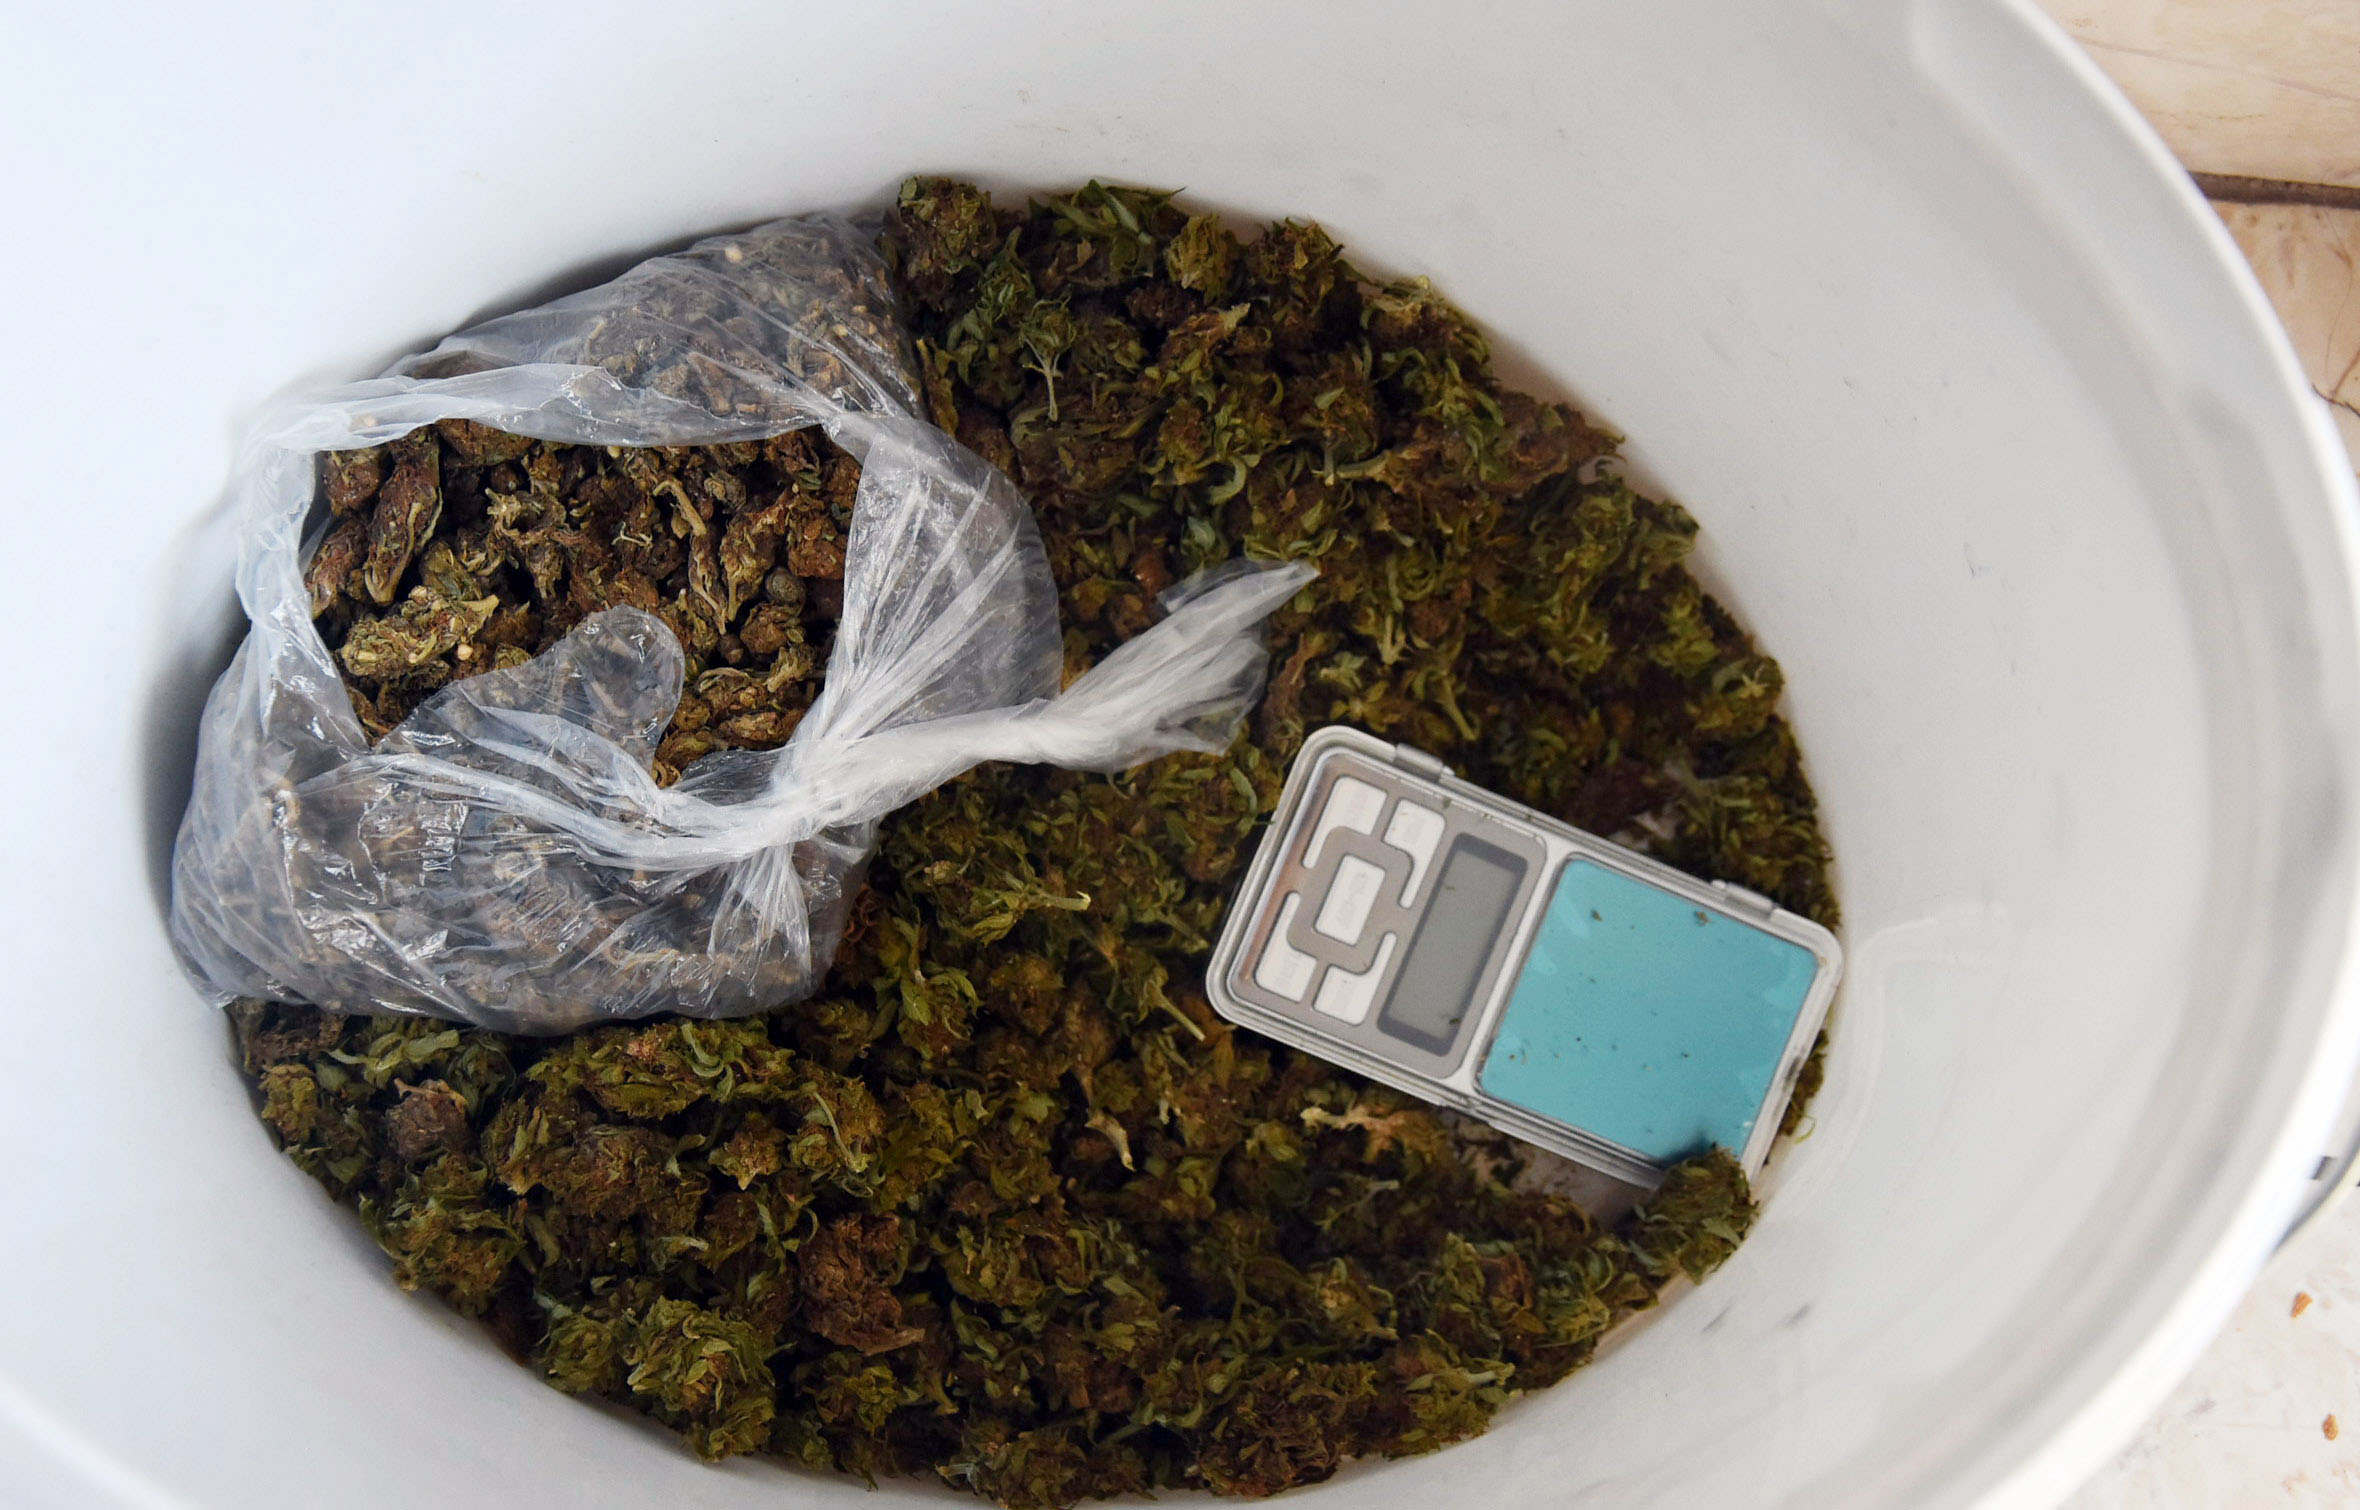 Пронађена марихуана и таблете са листе психоактивних супстанци